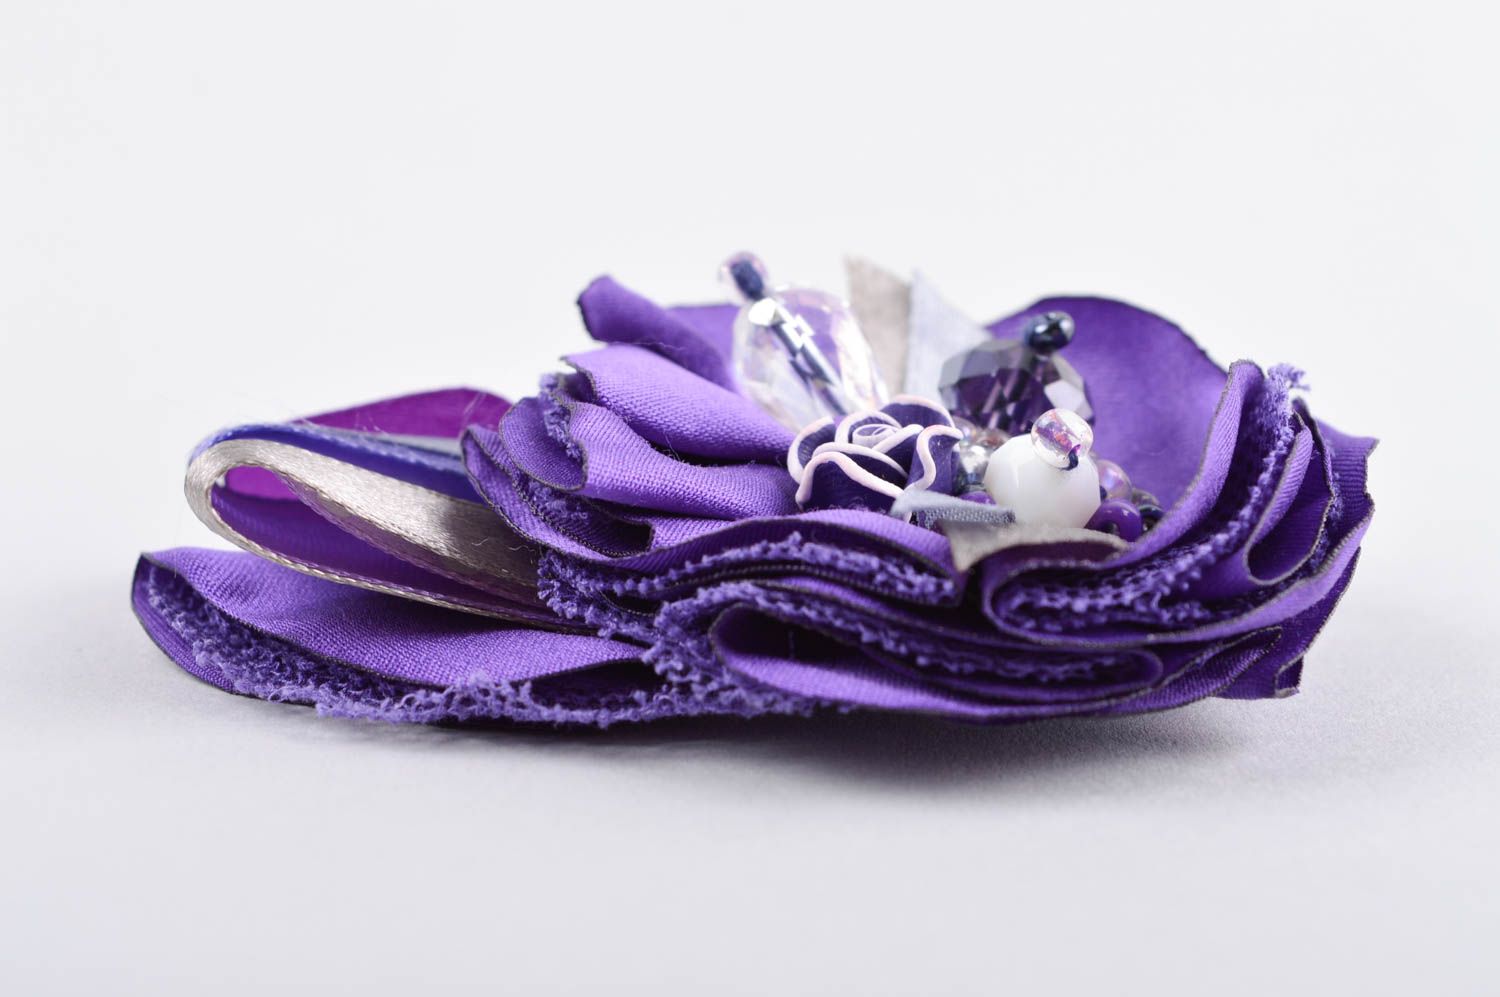 Брошь ручной работы бижутерия брошь фиолетовая текстильная брошь красивая фото 4